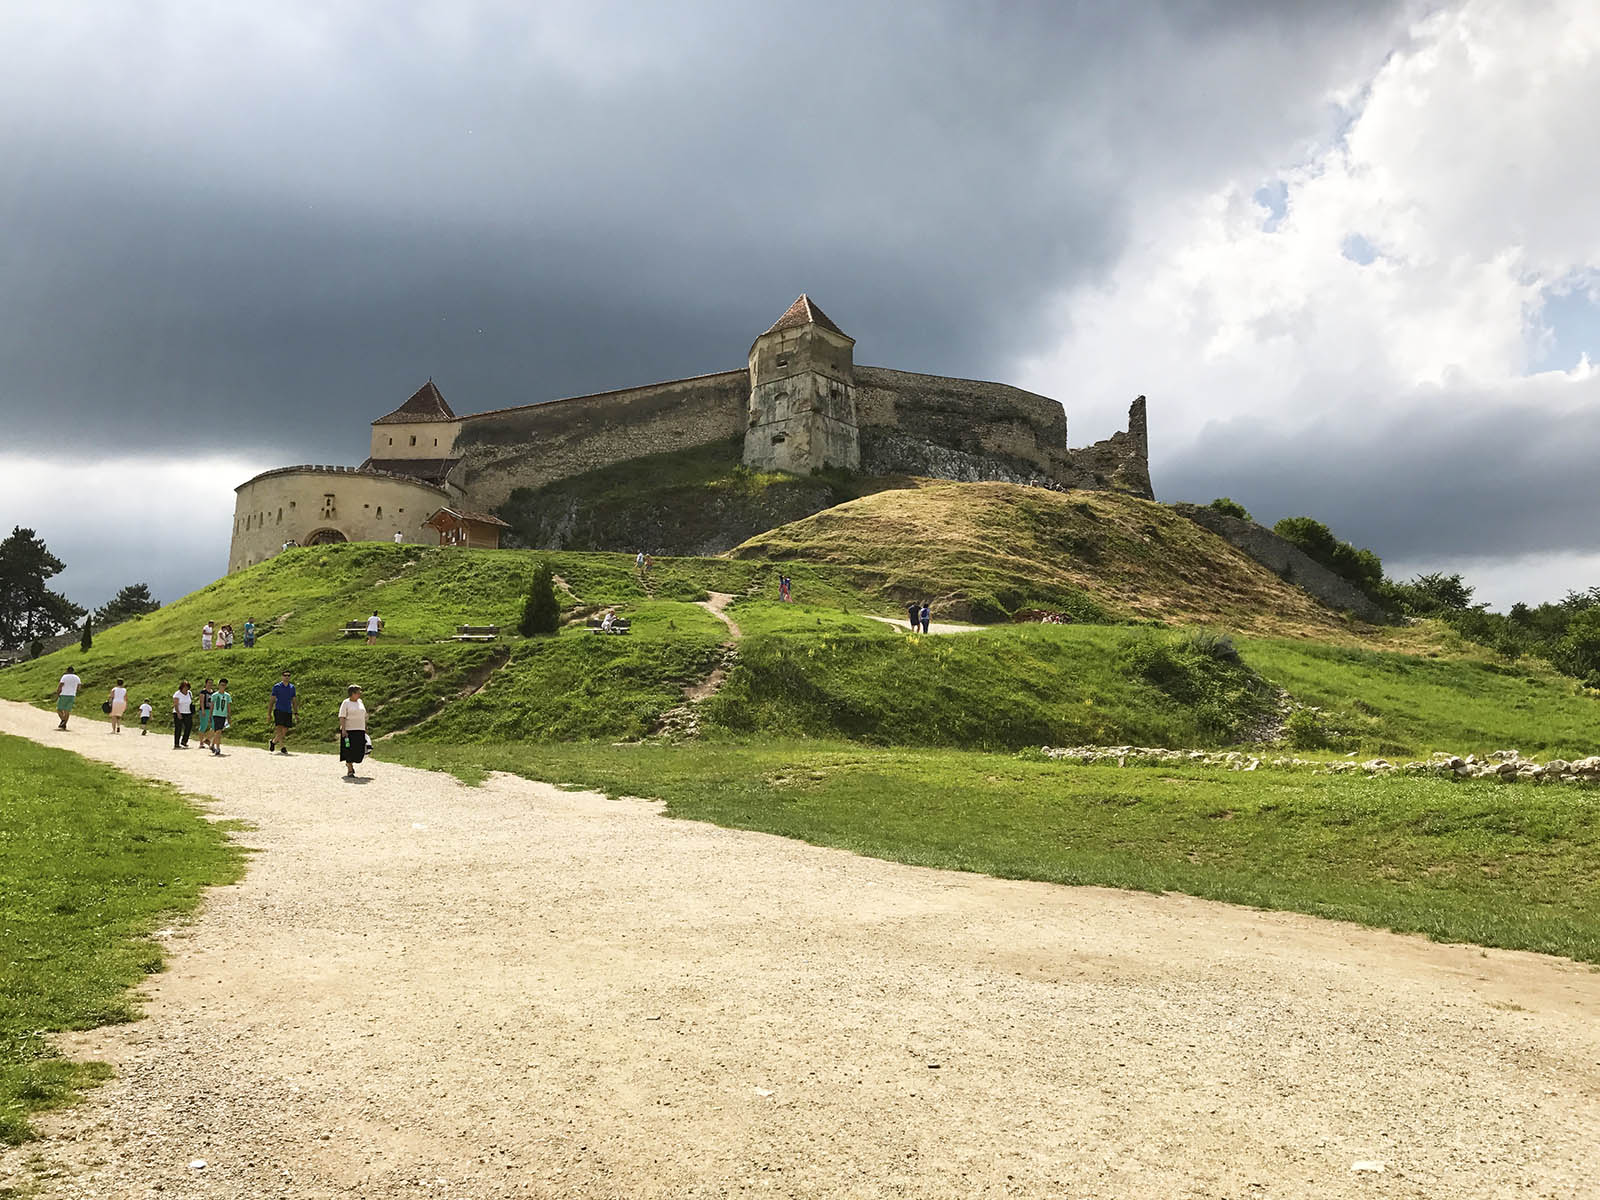 Rasnov Fortress in Romania. Credit: Carolina Valenzuela